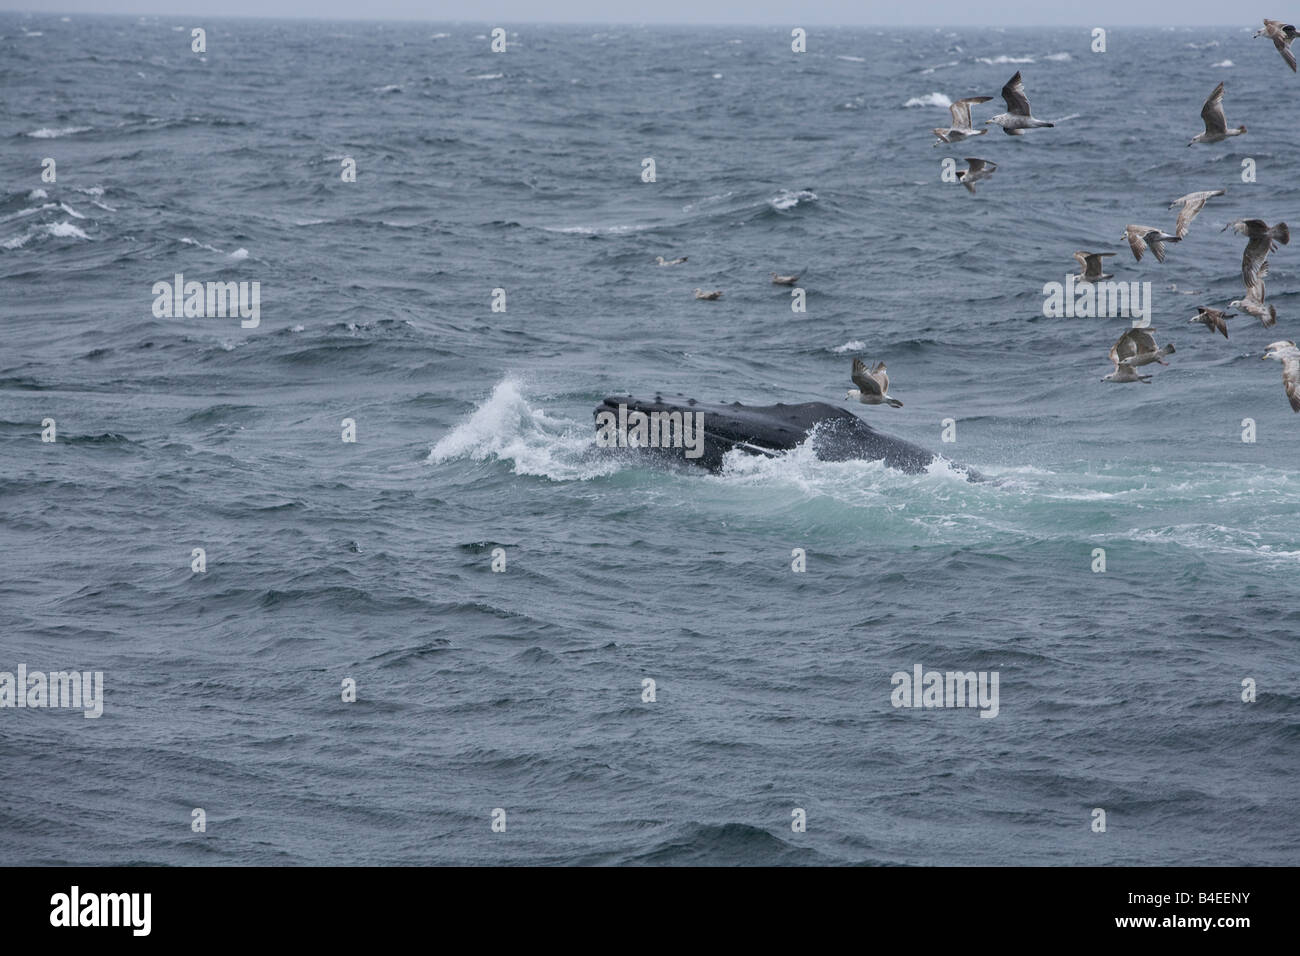 Una ballena Jorobada saltando con la boca llena de pescado y agua de mar como se alimenta Foto de stock